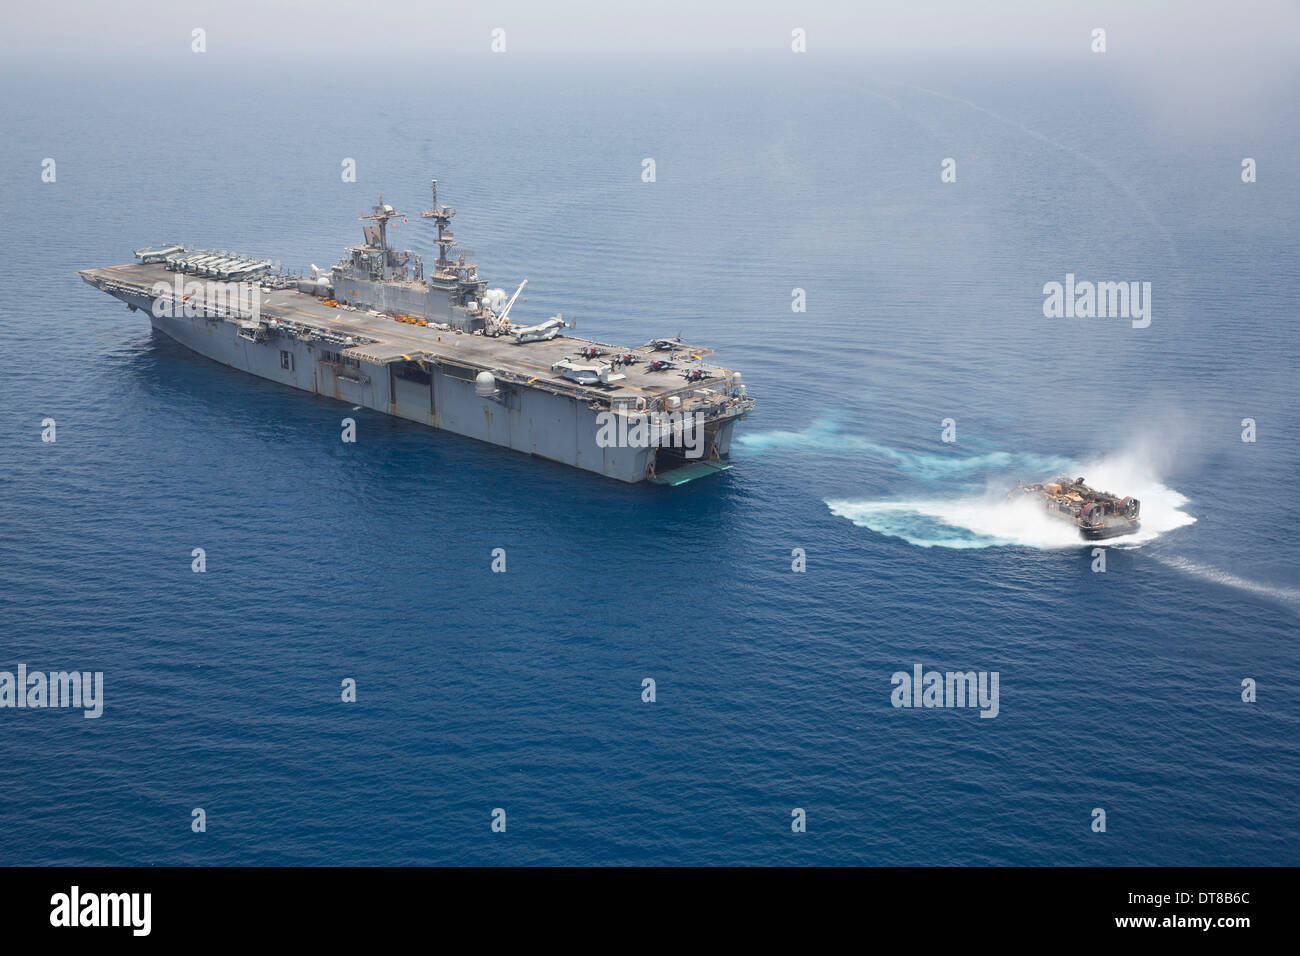 El golfo de Adén, 30 de mayo de 2013 - un cojín de aire Landing Craft enfoques así la cubierta del buque de asalto anfibio USS Kearsarge. Foto de stock